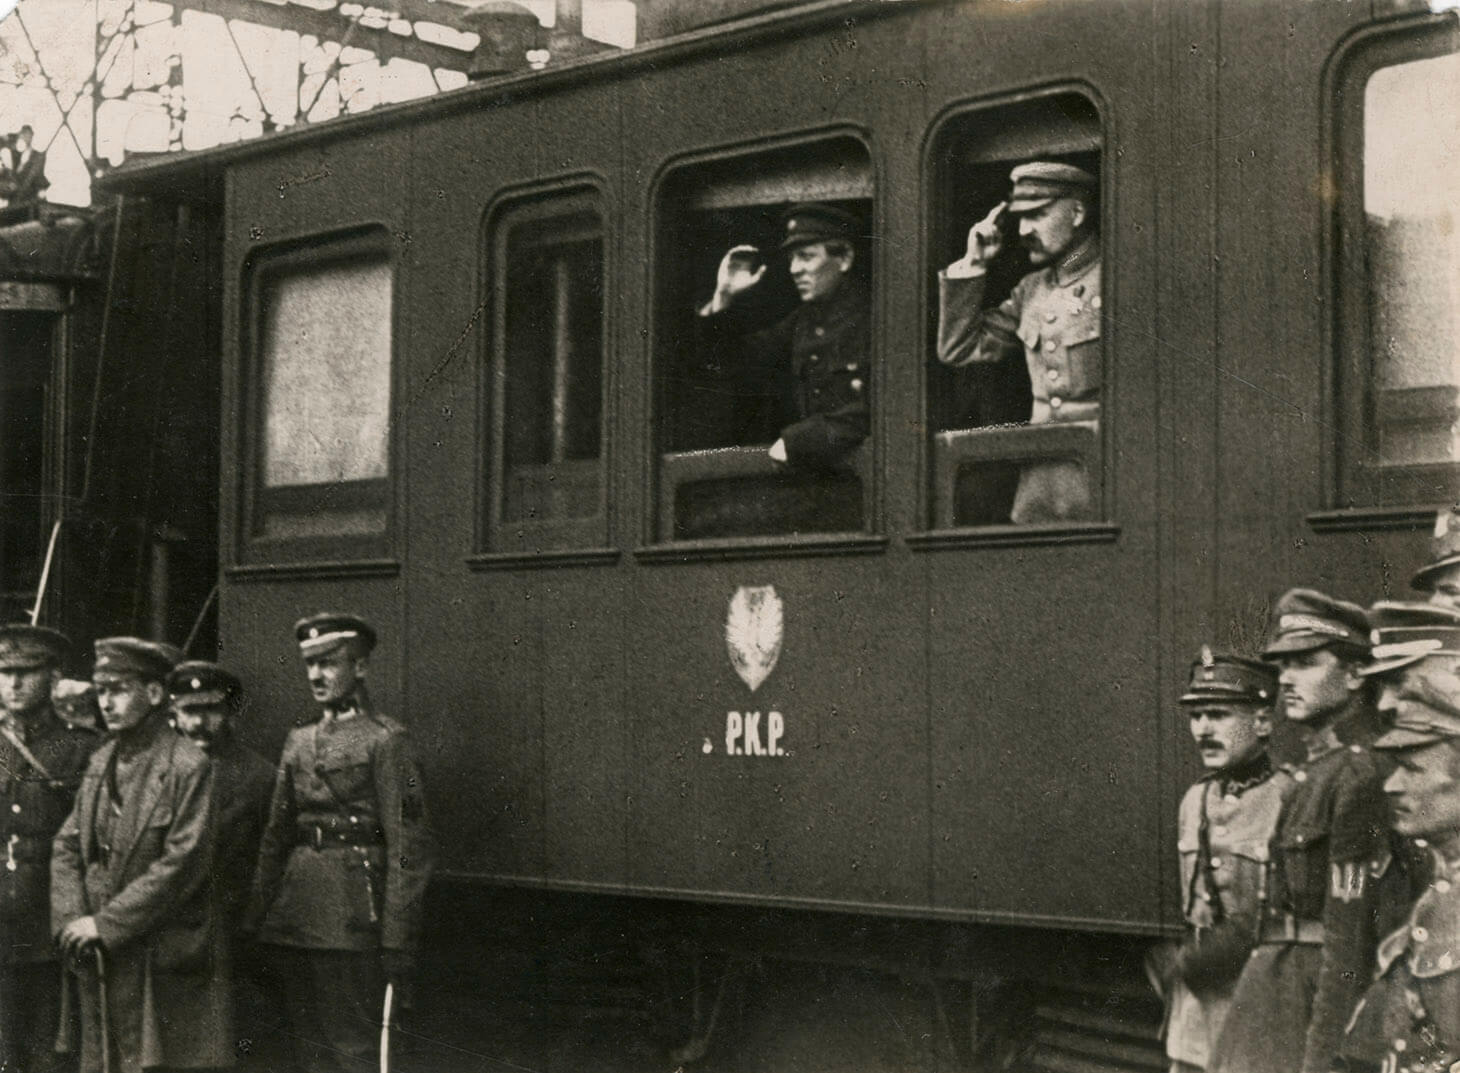 Czarno-biała fotografia przedstawia Naczelnego Wodza Józefa Piłsudskiego i atamana Symona Petlurę, stojących w oknach wagonu kolejowego i salutujących. Okna, które znajdują się w centrum kadru, są opuszczone. W oknie pierwszym od lewej ataman Petlura ubrany w ciemny mundur, w drugim oknie  Naczelny Wódz Józef Piłsudski w jasnym mundurze i czapce maciejówce. Pod oknami, na wagonie namalowane jest godło z orłem i napis P.K.P. Przed wagonem, na peronie stoją swobodnie oficerowie kierując wzrok w tę samą stronę co główni bohaterowie zdjęcia.

